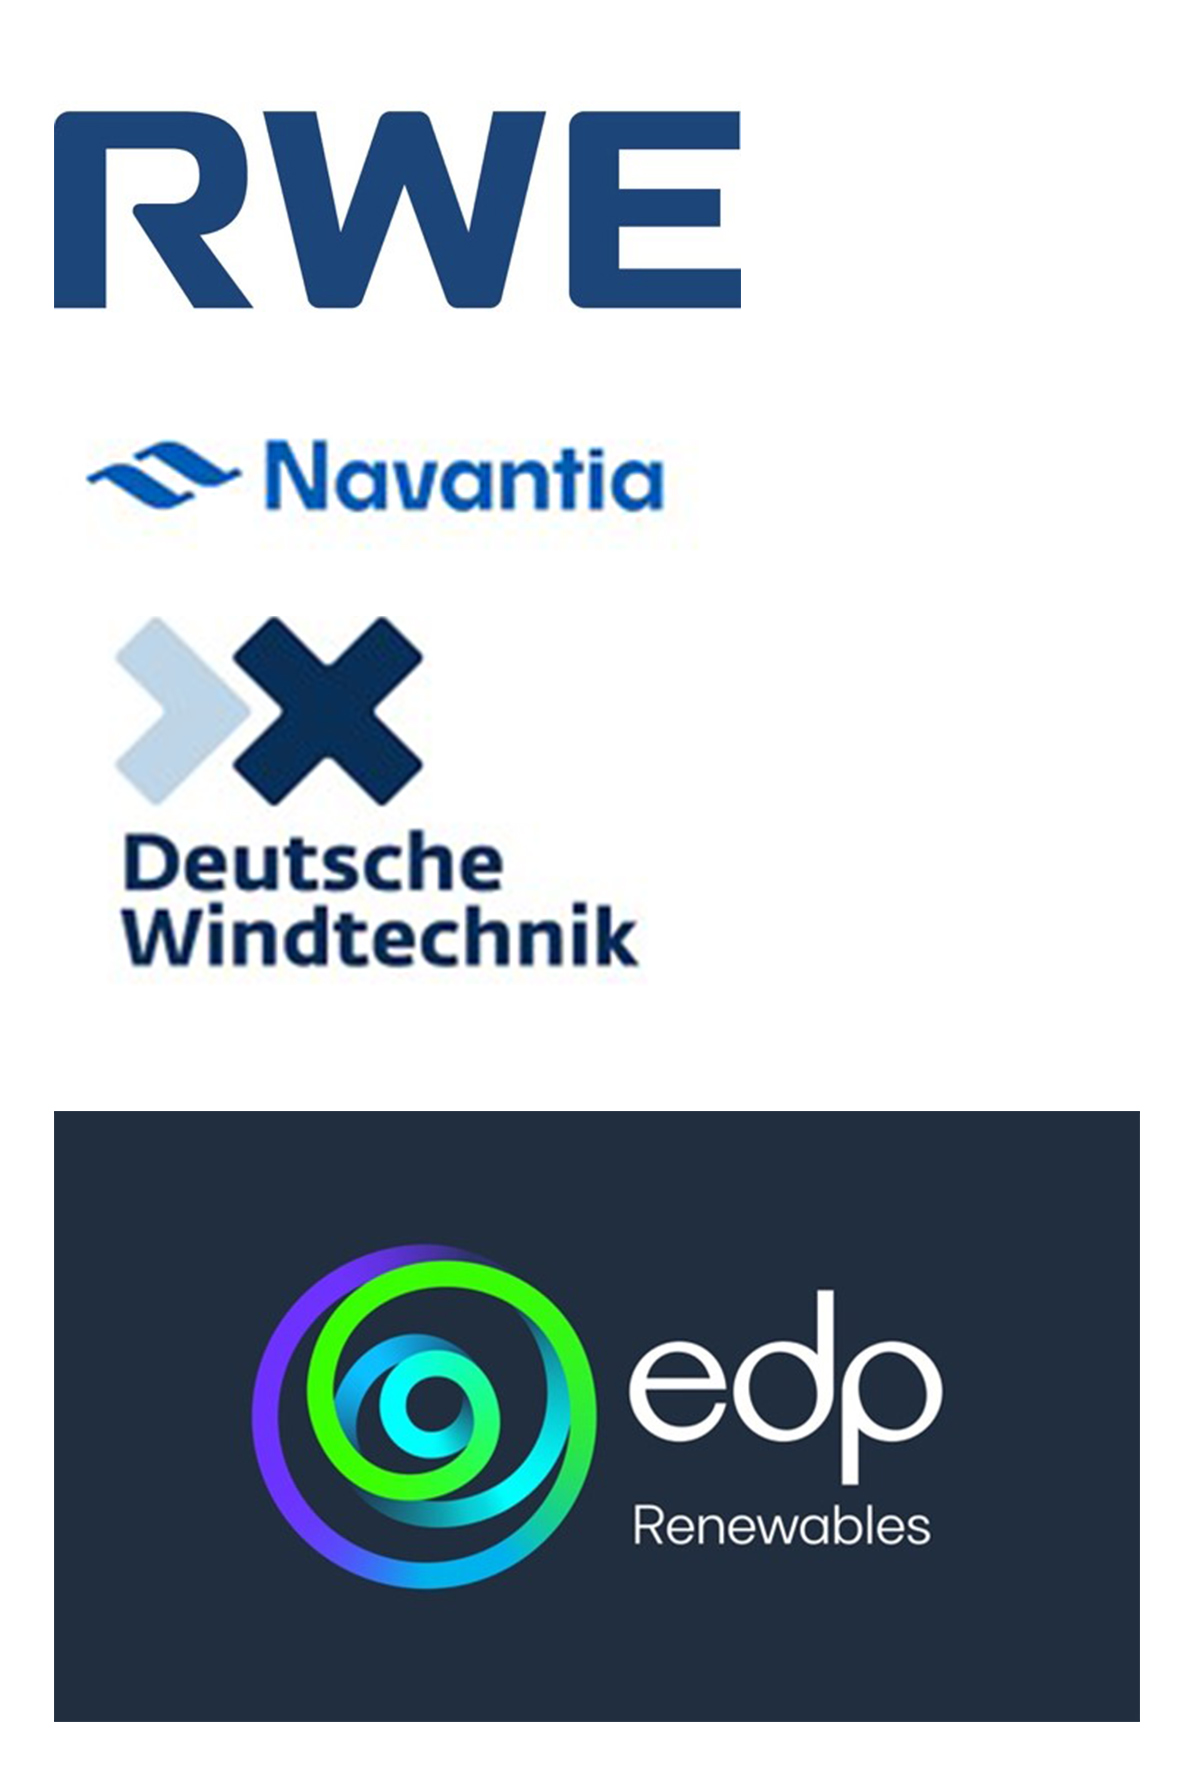 rwe-navantia-deutsche-windtechnik-edp